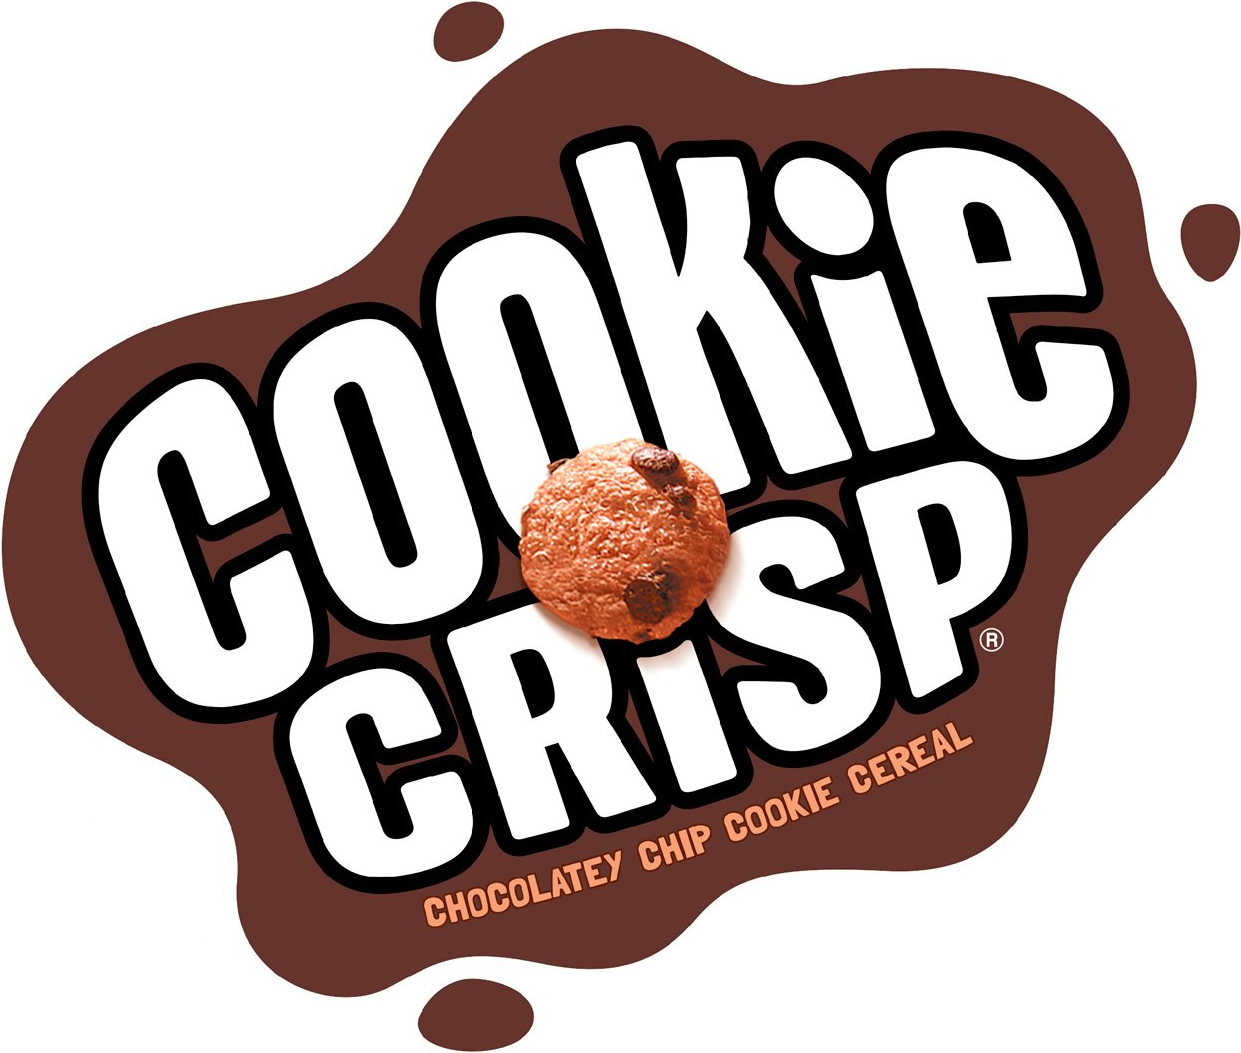 cookie crisp slogan